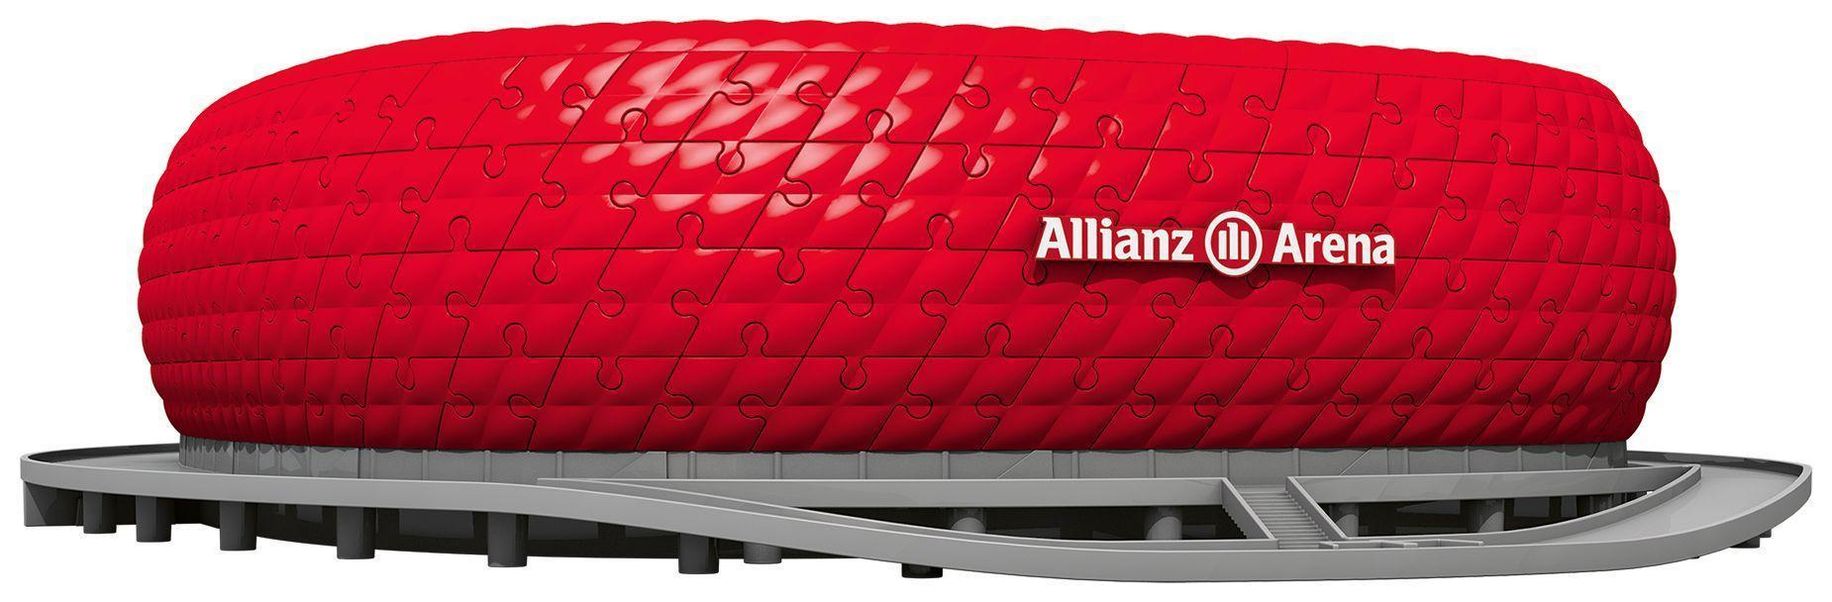 Ravensburger 3D Puzzle Allianz Arena 12526 - Bayern München Fanartikel -  Stadion als 3D Puzzle | Weltbild.ch